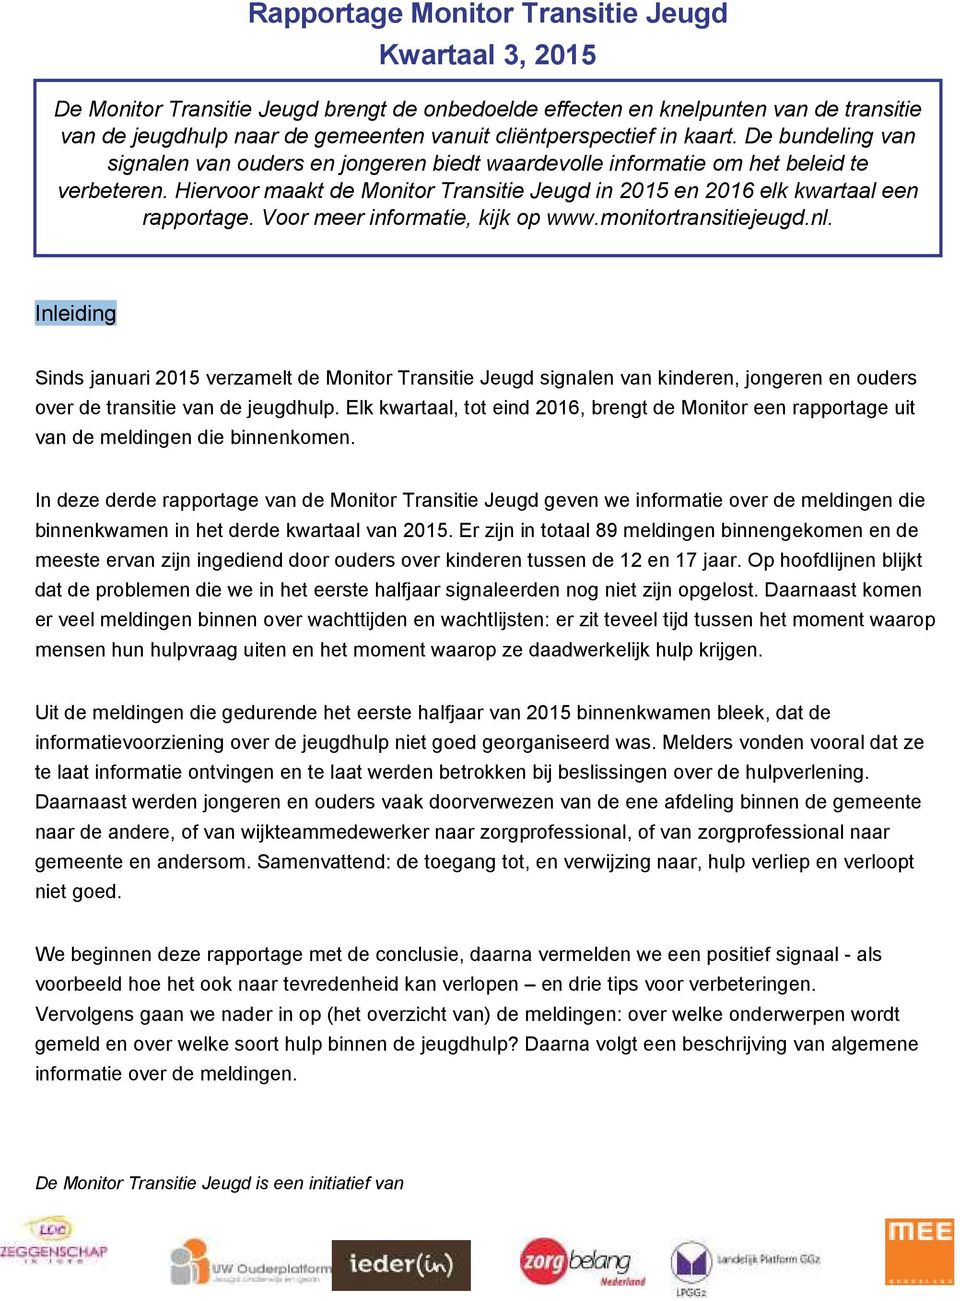 Hiervoor maakt de Monitor Transitie Jeugd in 201 en 2016 elk kwartaal een rapportage. Voor meer informatie, kijk op www.monitortransitiejeugd.nl.